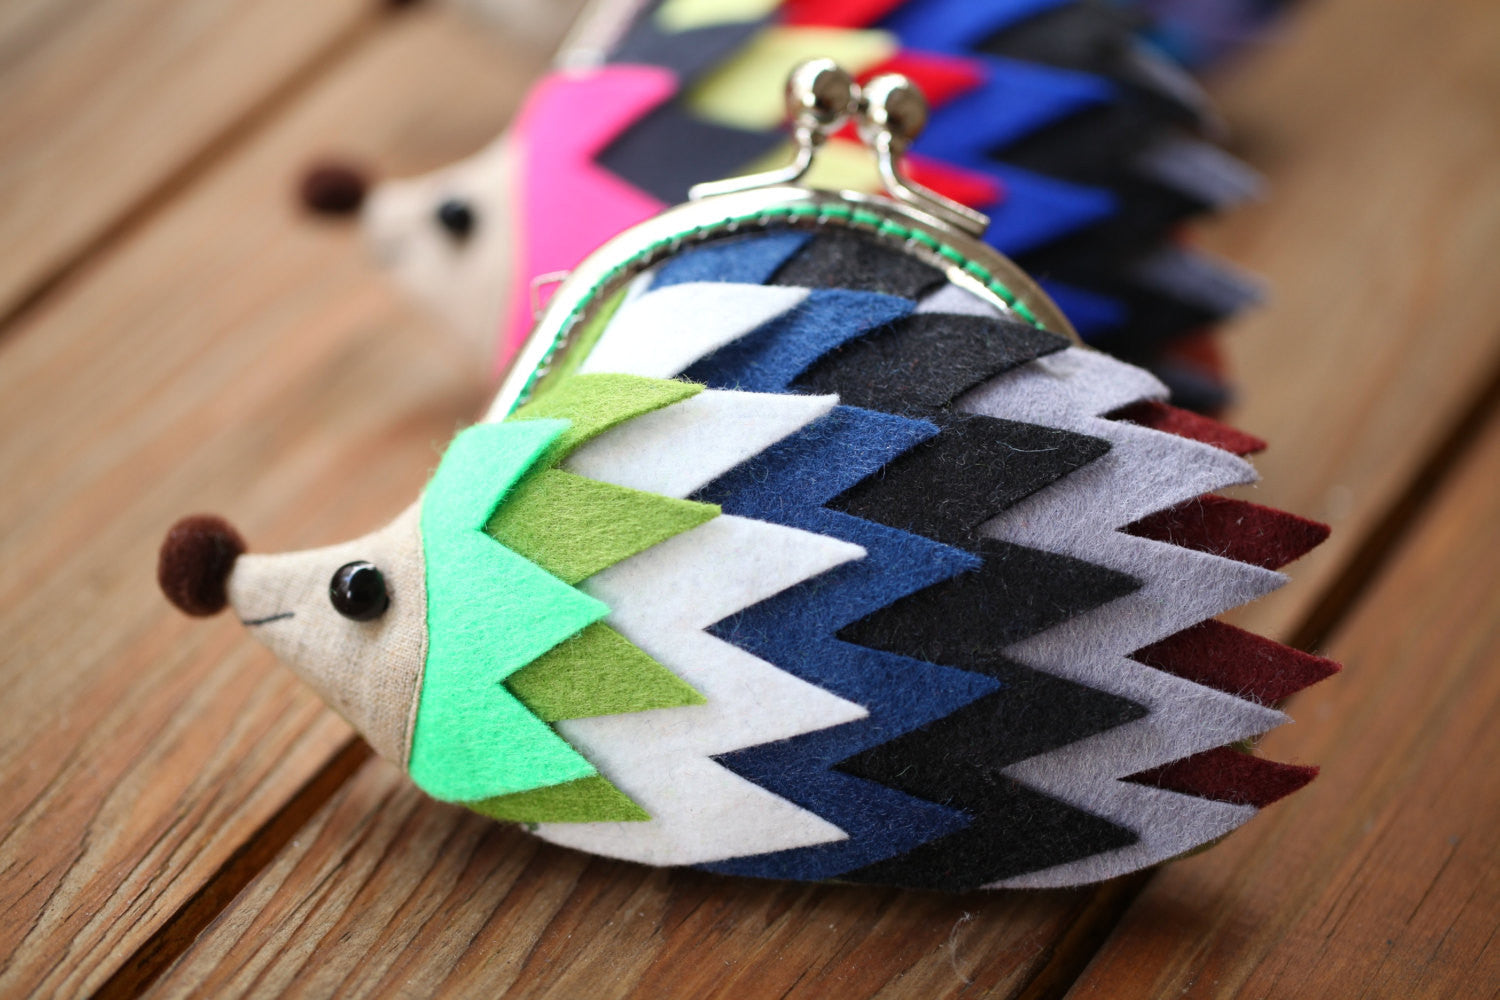 Color palette hedgehog clutch purse "Peace"